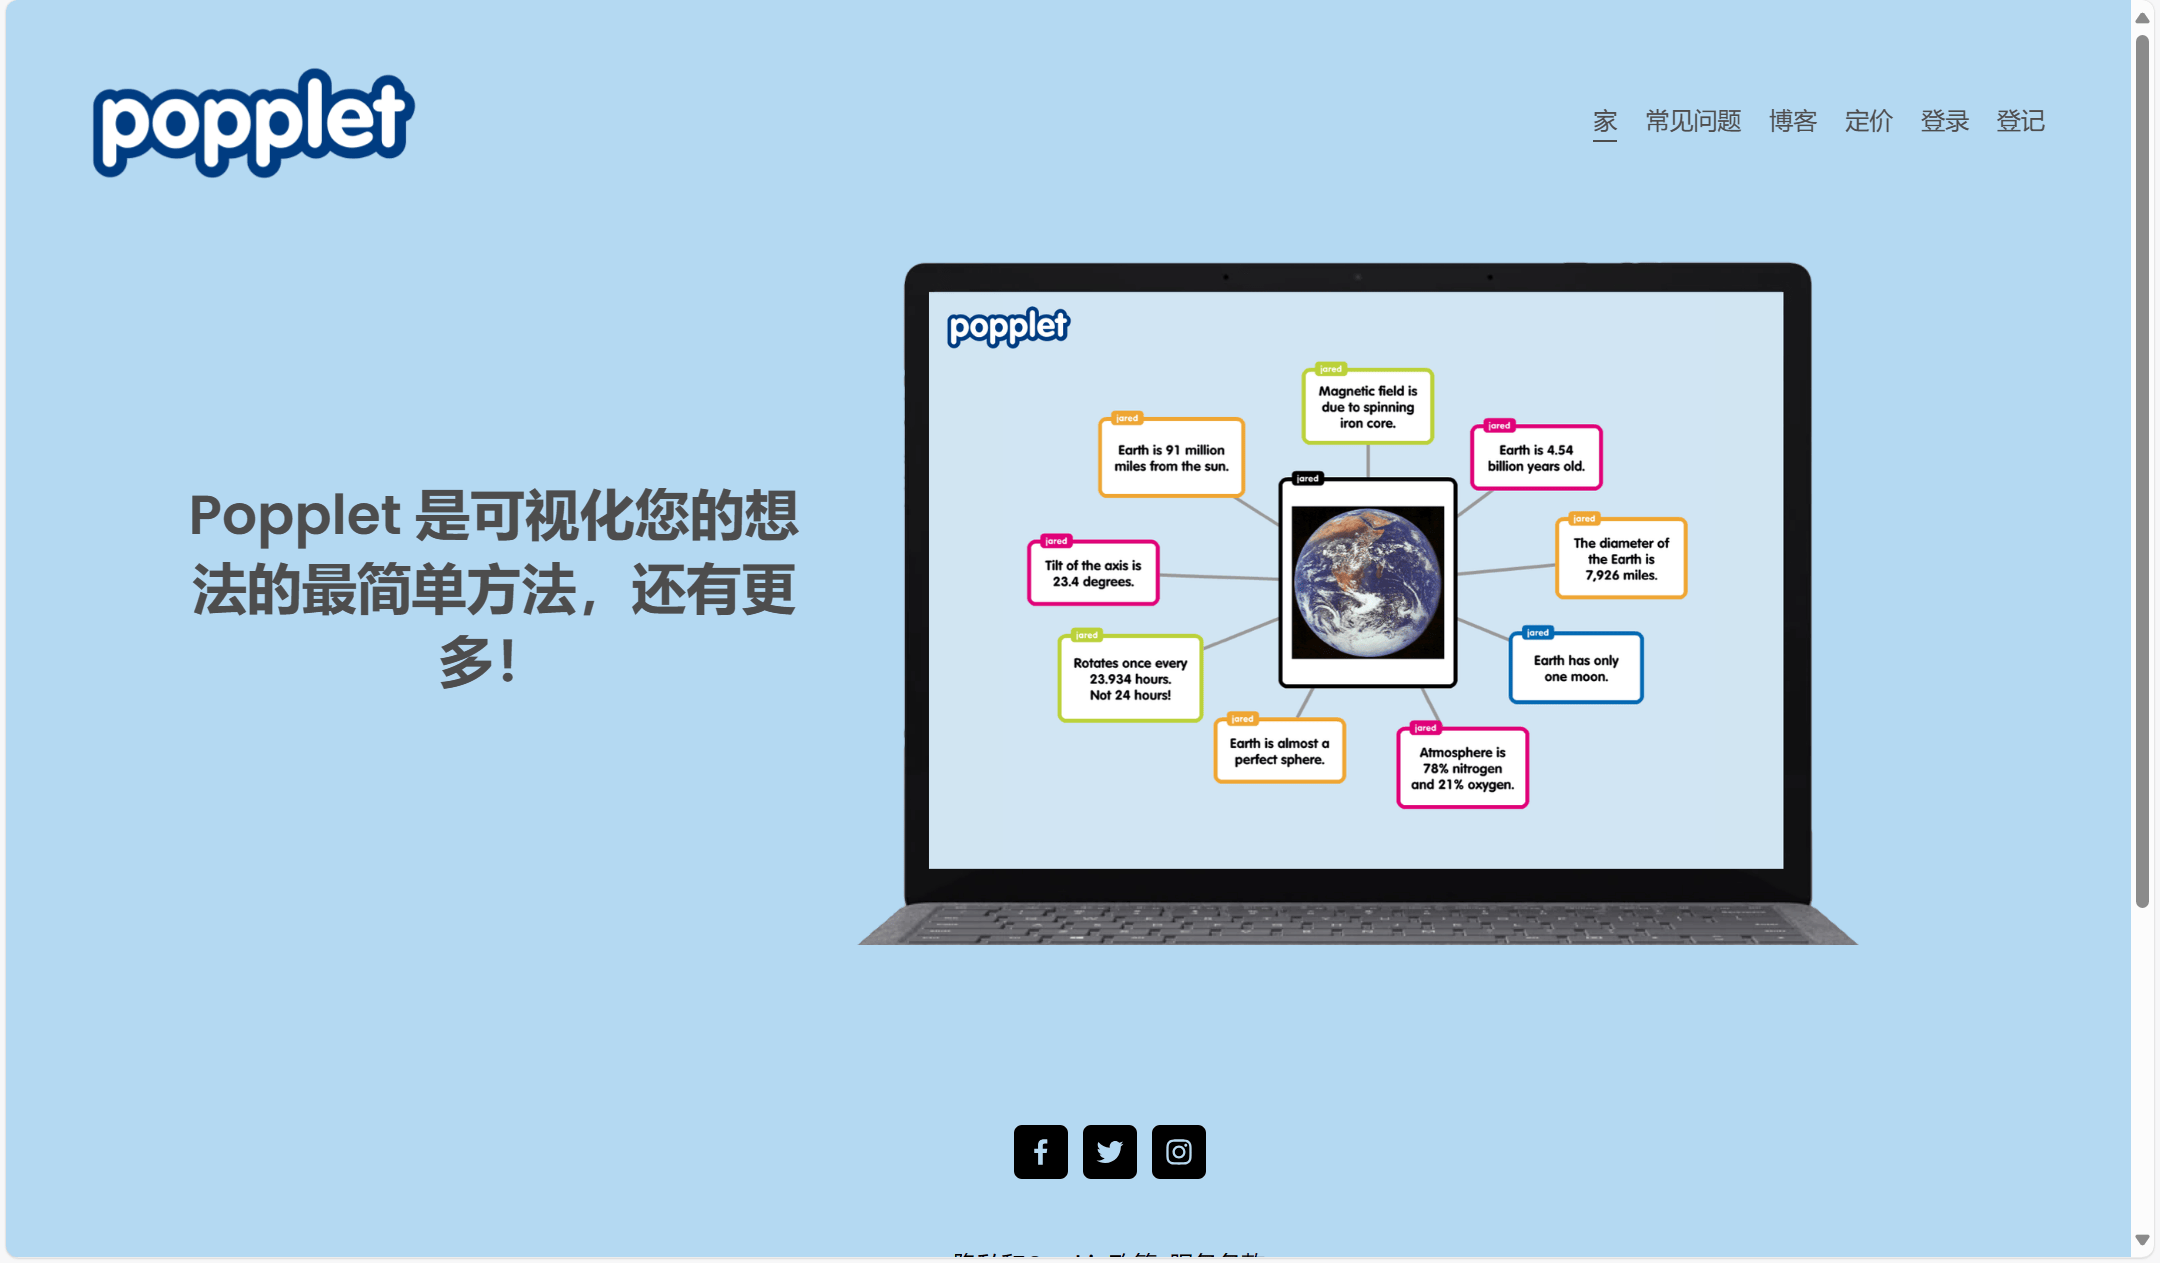 wolai的思维导图界面简洁,支持丰富的文本编辑和多媒体嵌入,用户可以